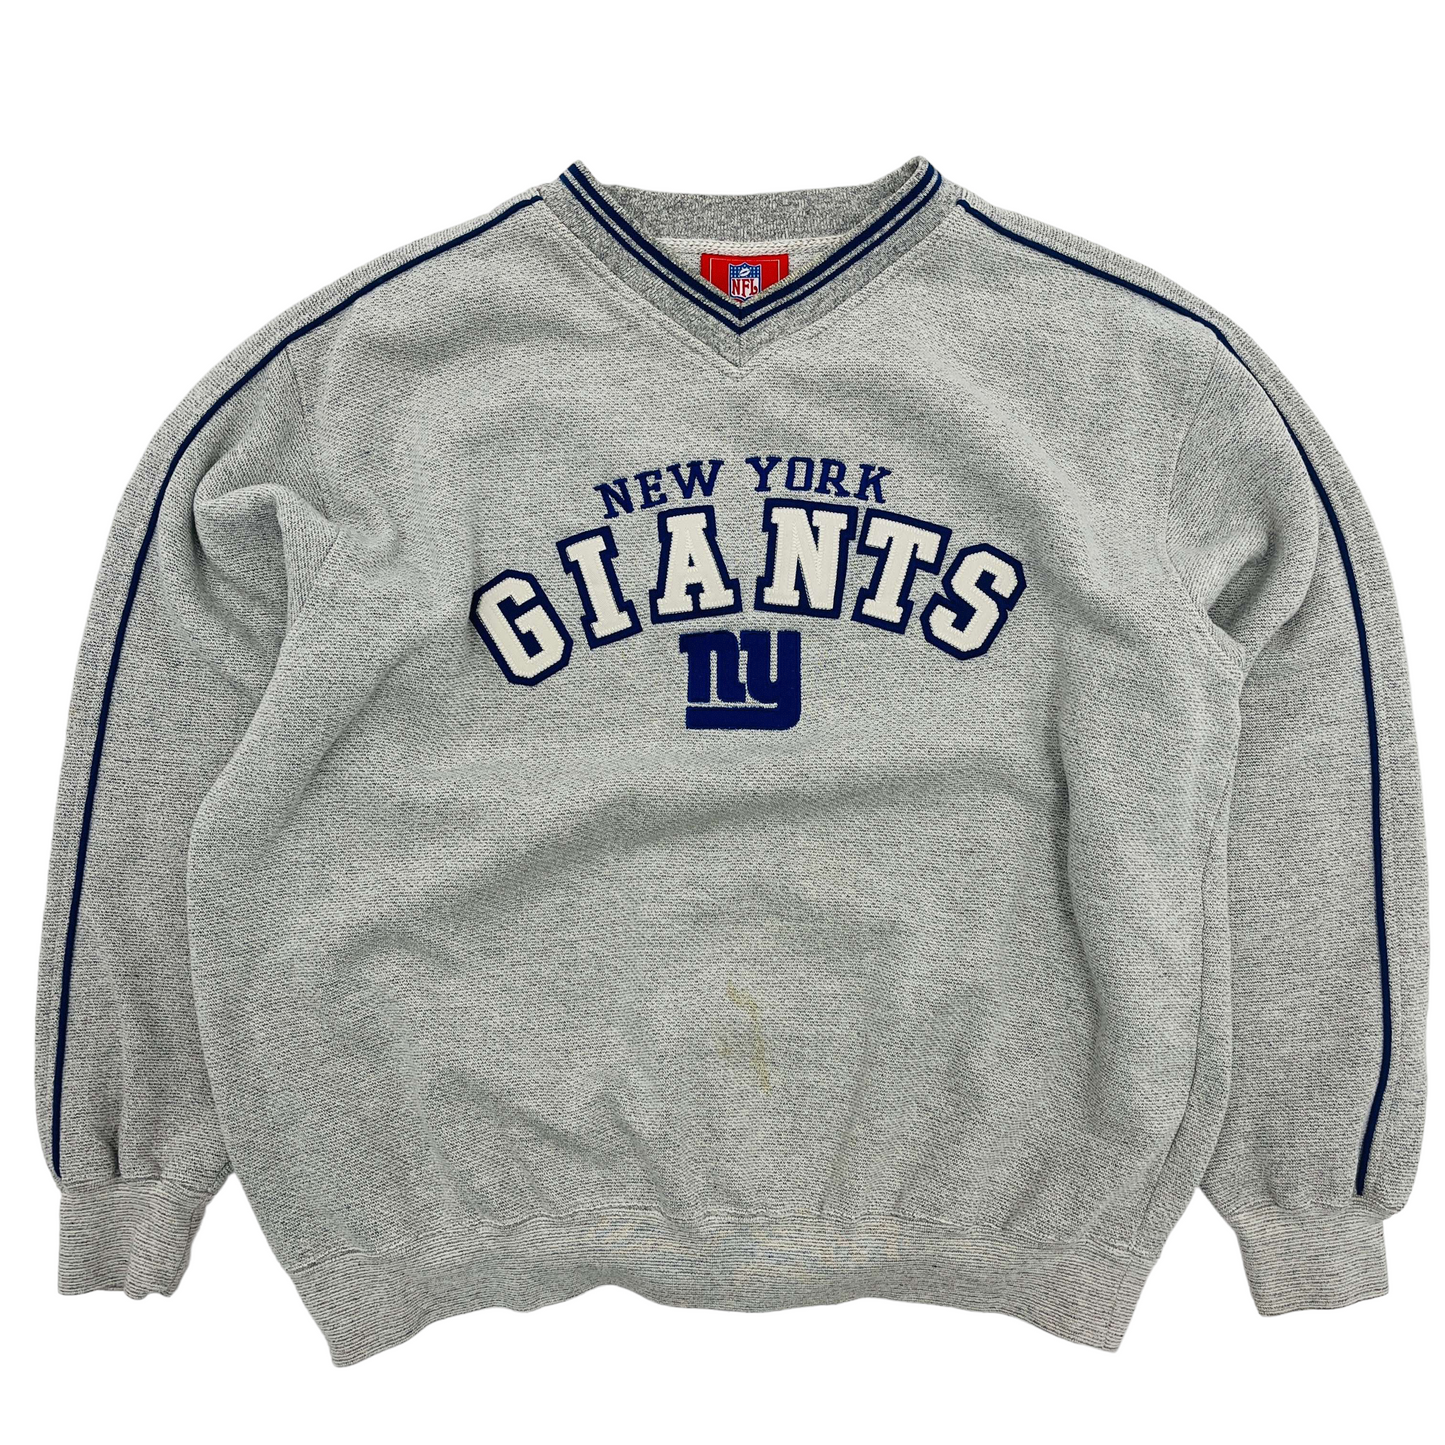 
                  
                    New York Giants NFL Sweatshirt - 2XL
                  
                